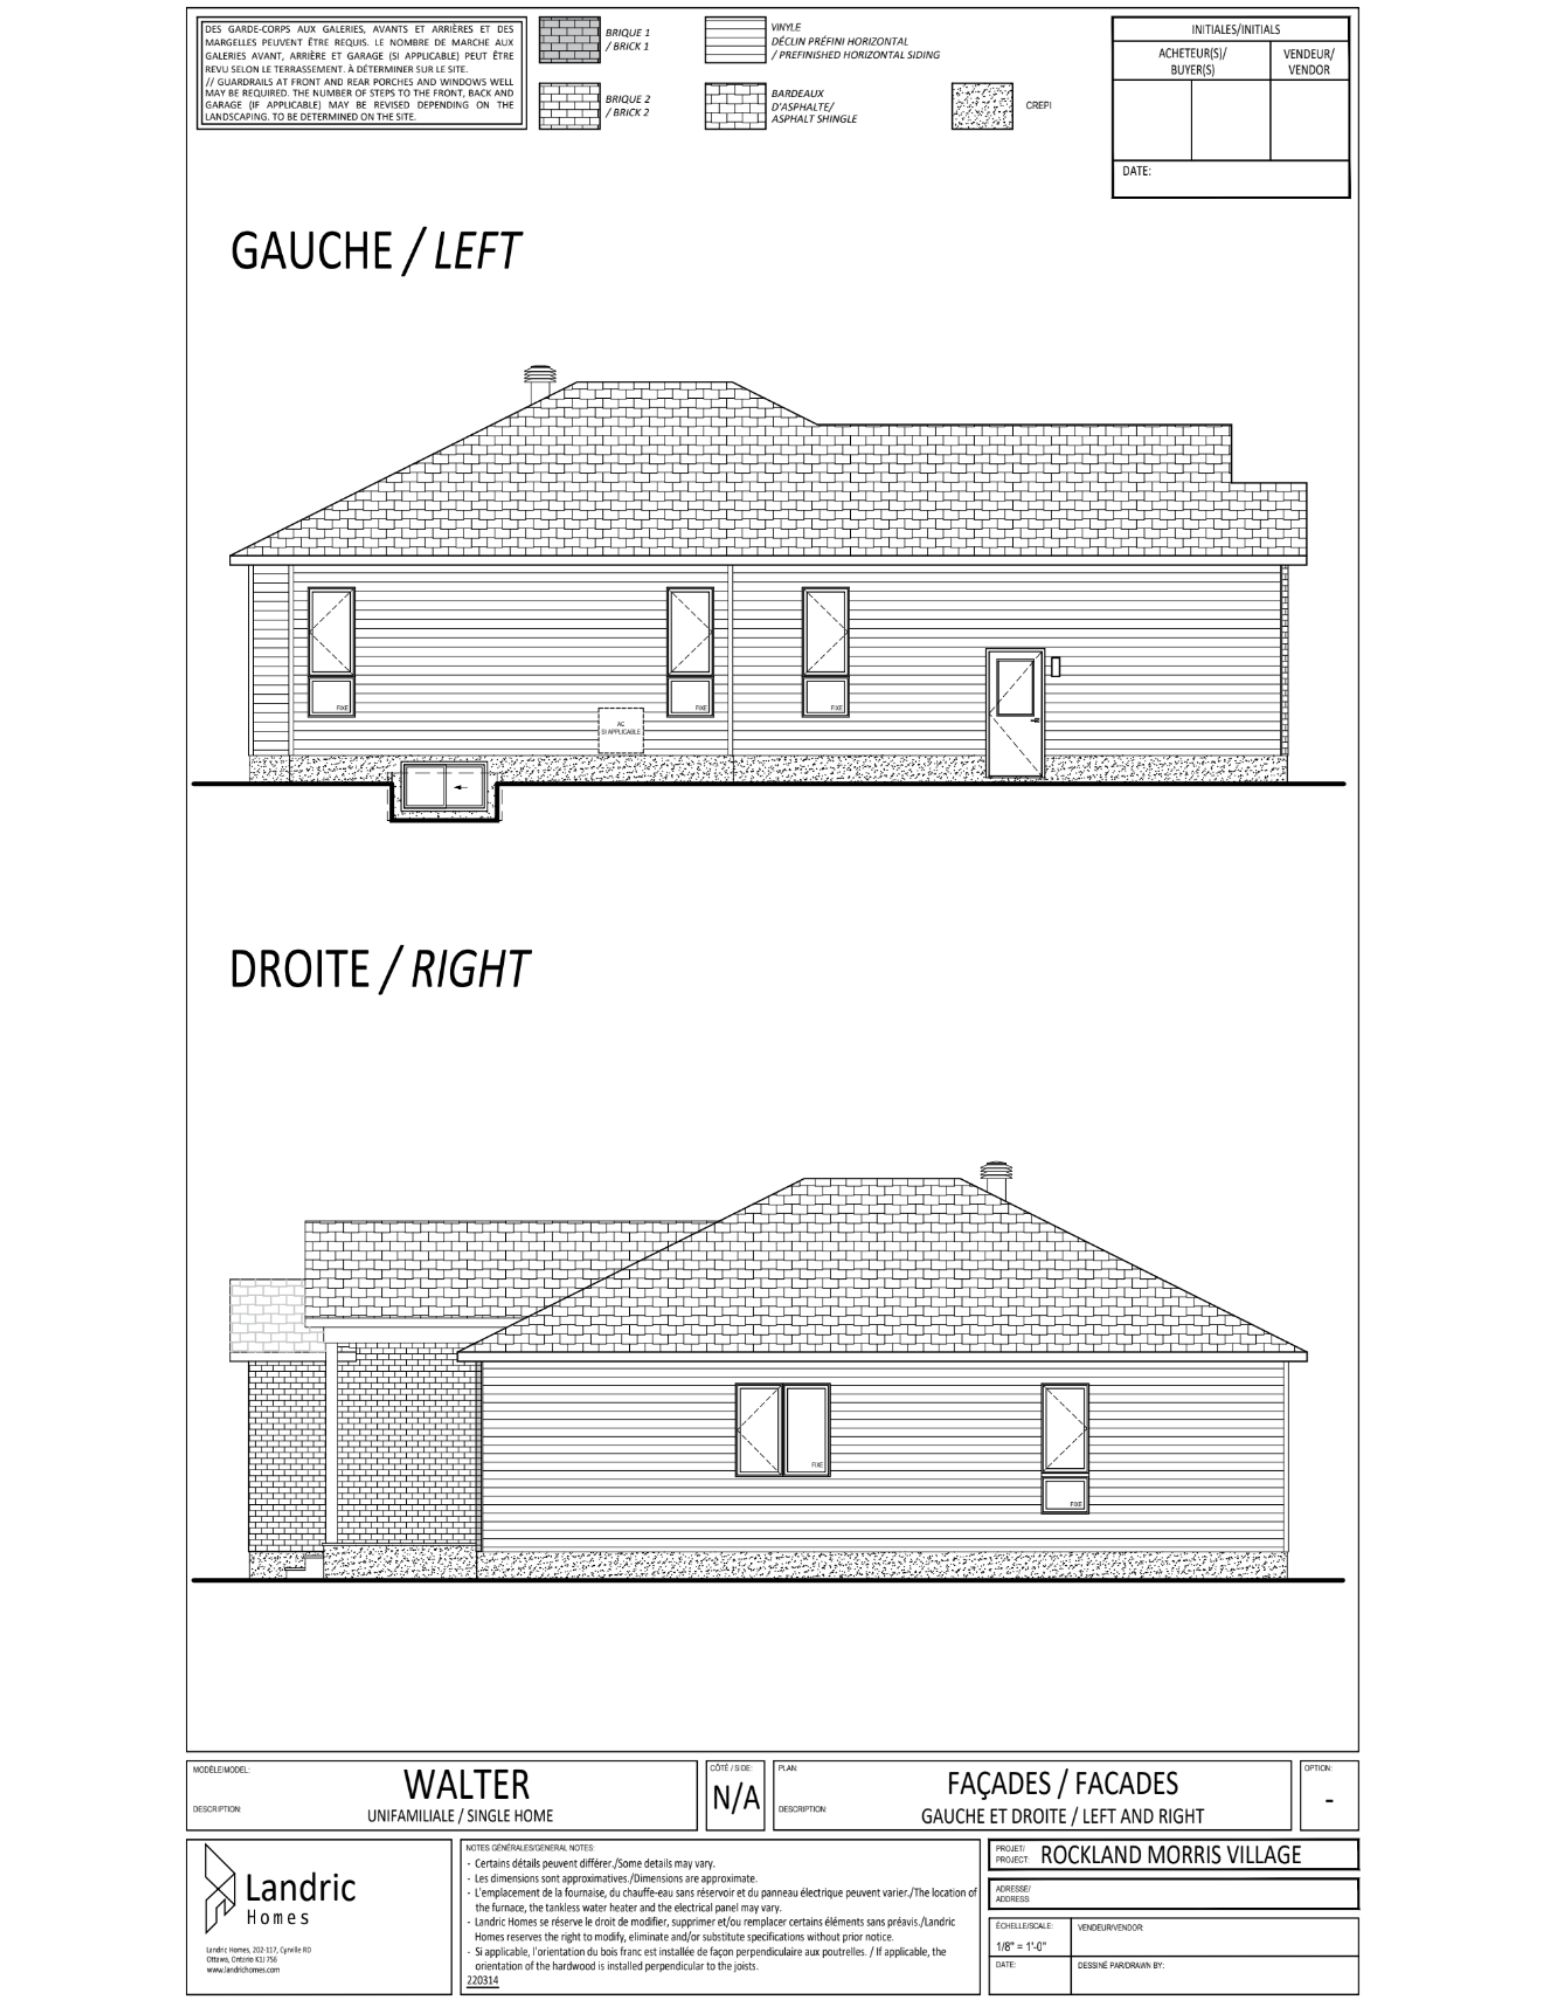 Beaumont, Morris Village floor plans (22)